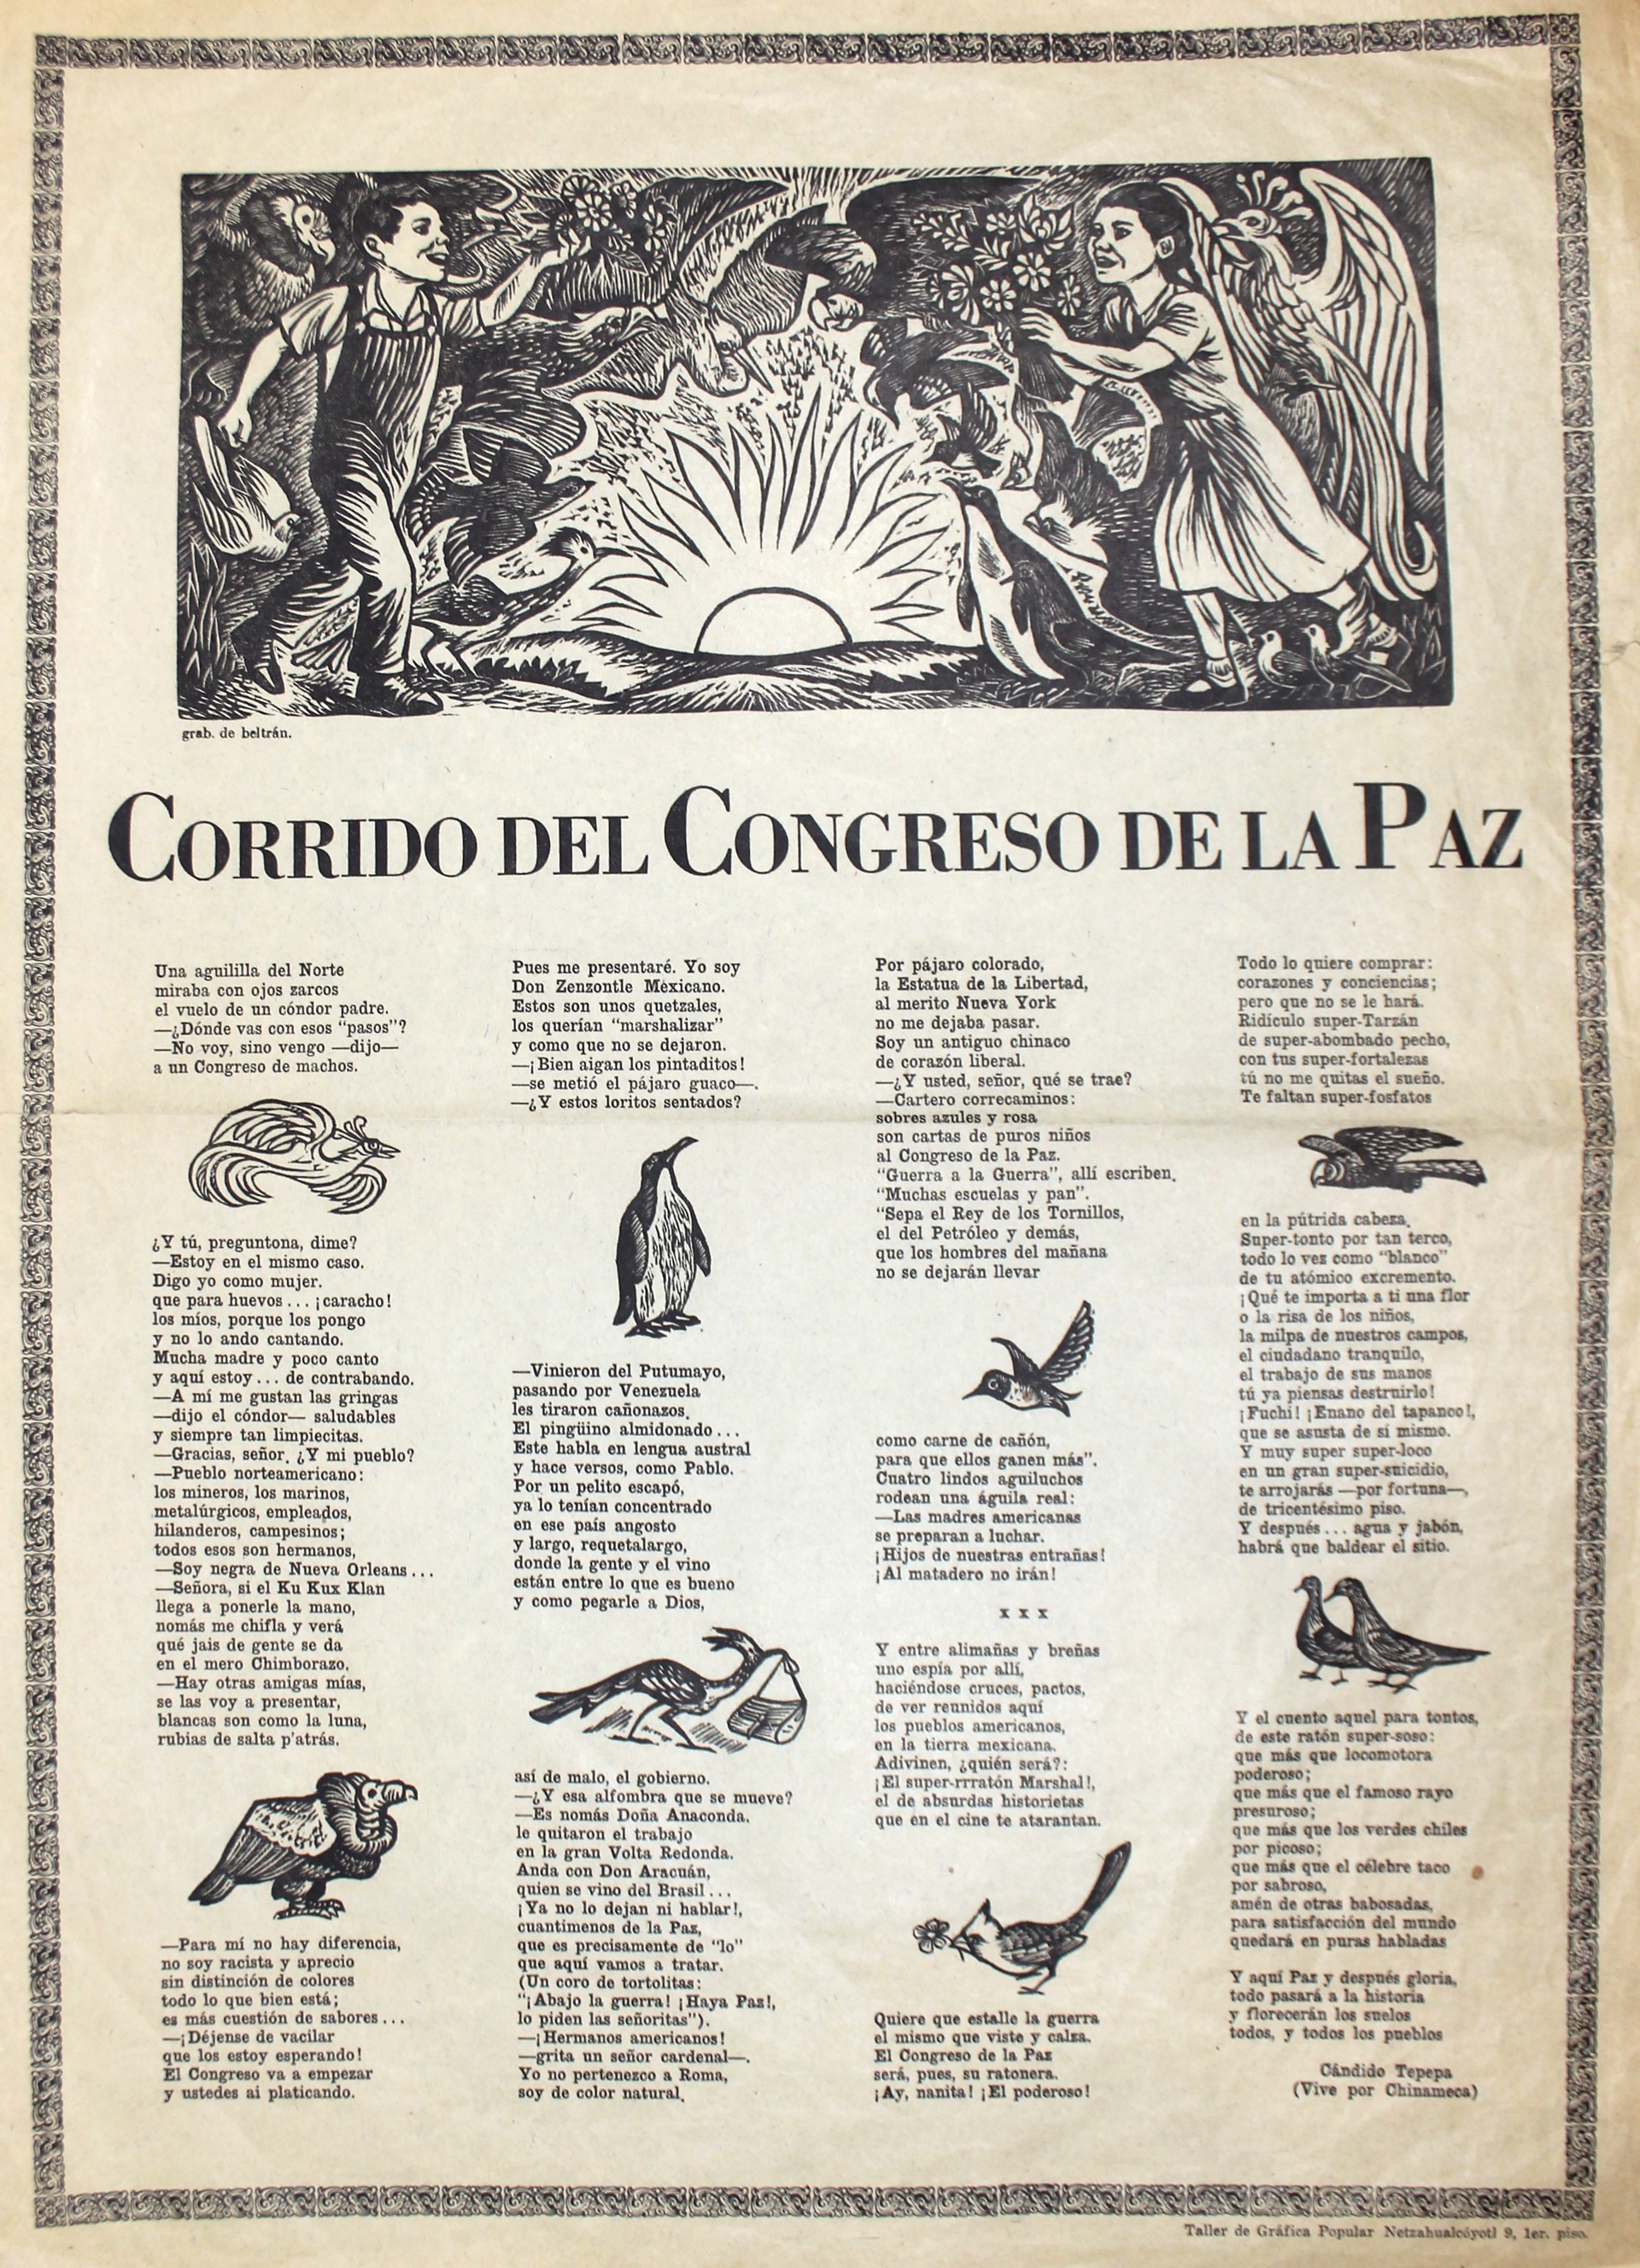 Corrido del Congreso de la Paz (Corrido of the Peace Congress) by Alberto Beltrán (1923 - 2002)